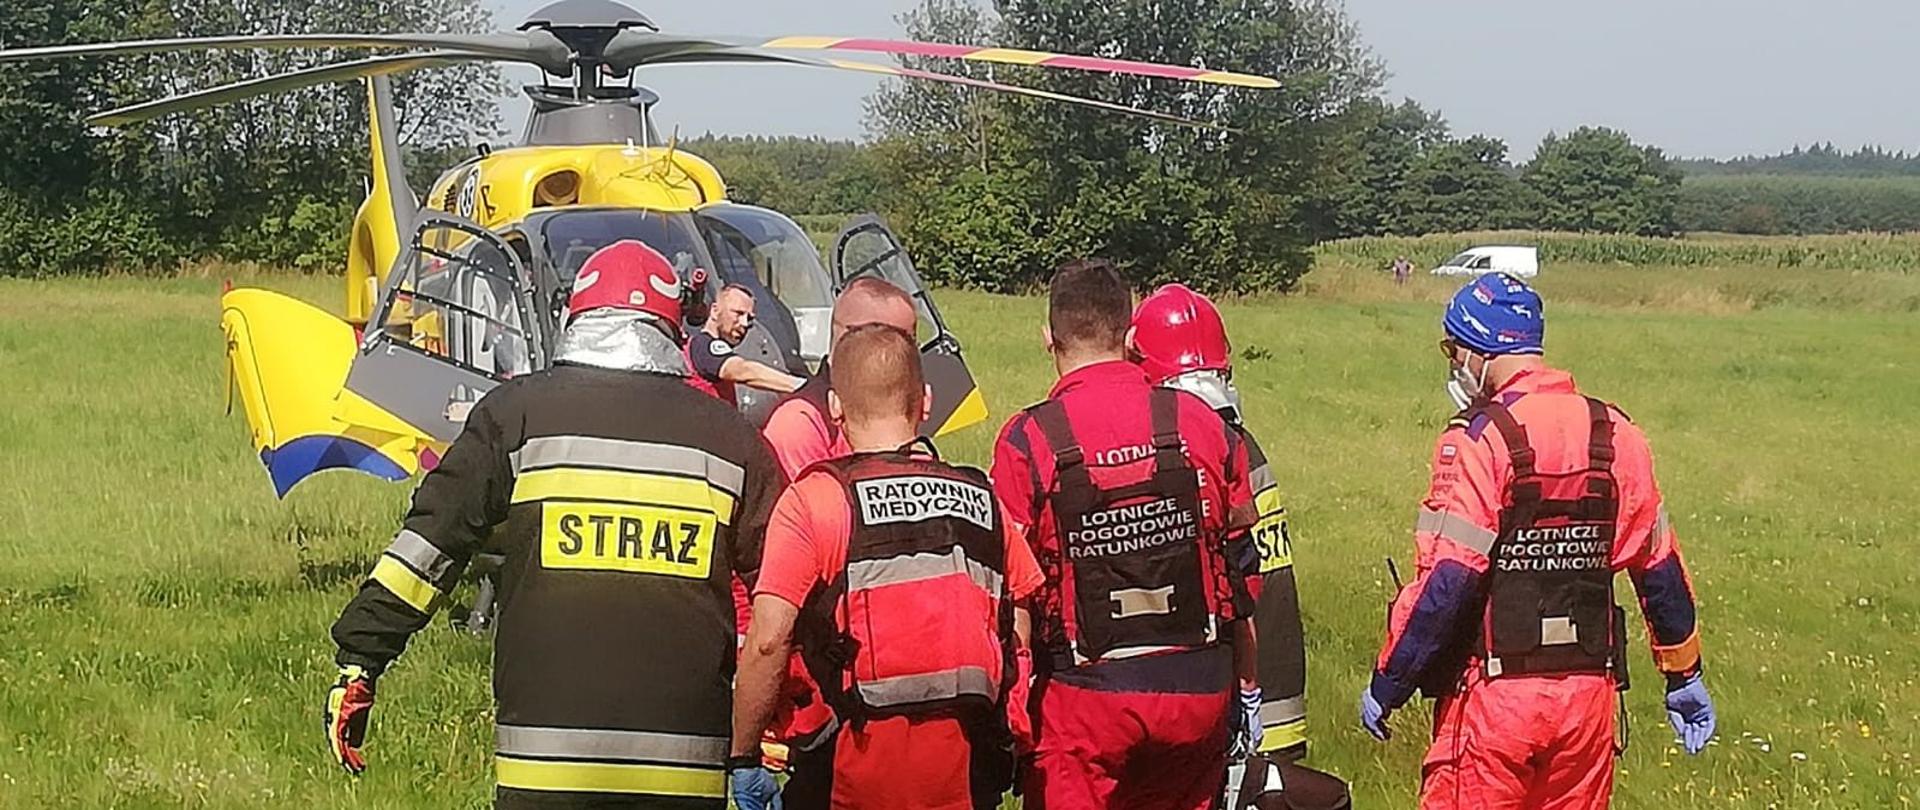 Zdjęcie przedstawia strażaków wraz z ratownikami medycznymi, którzy transportują poszkodowanego z wypadku do lotniczego pogotowia ratunkowego. Całość zdarzenia ma miejsce na łące, gdzie wylądował helikopter.